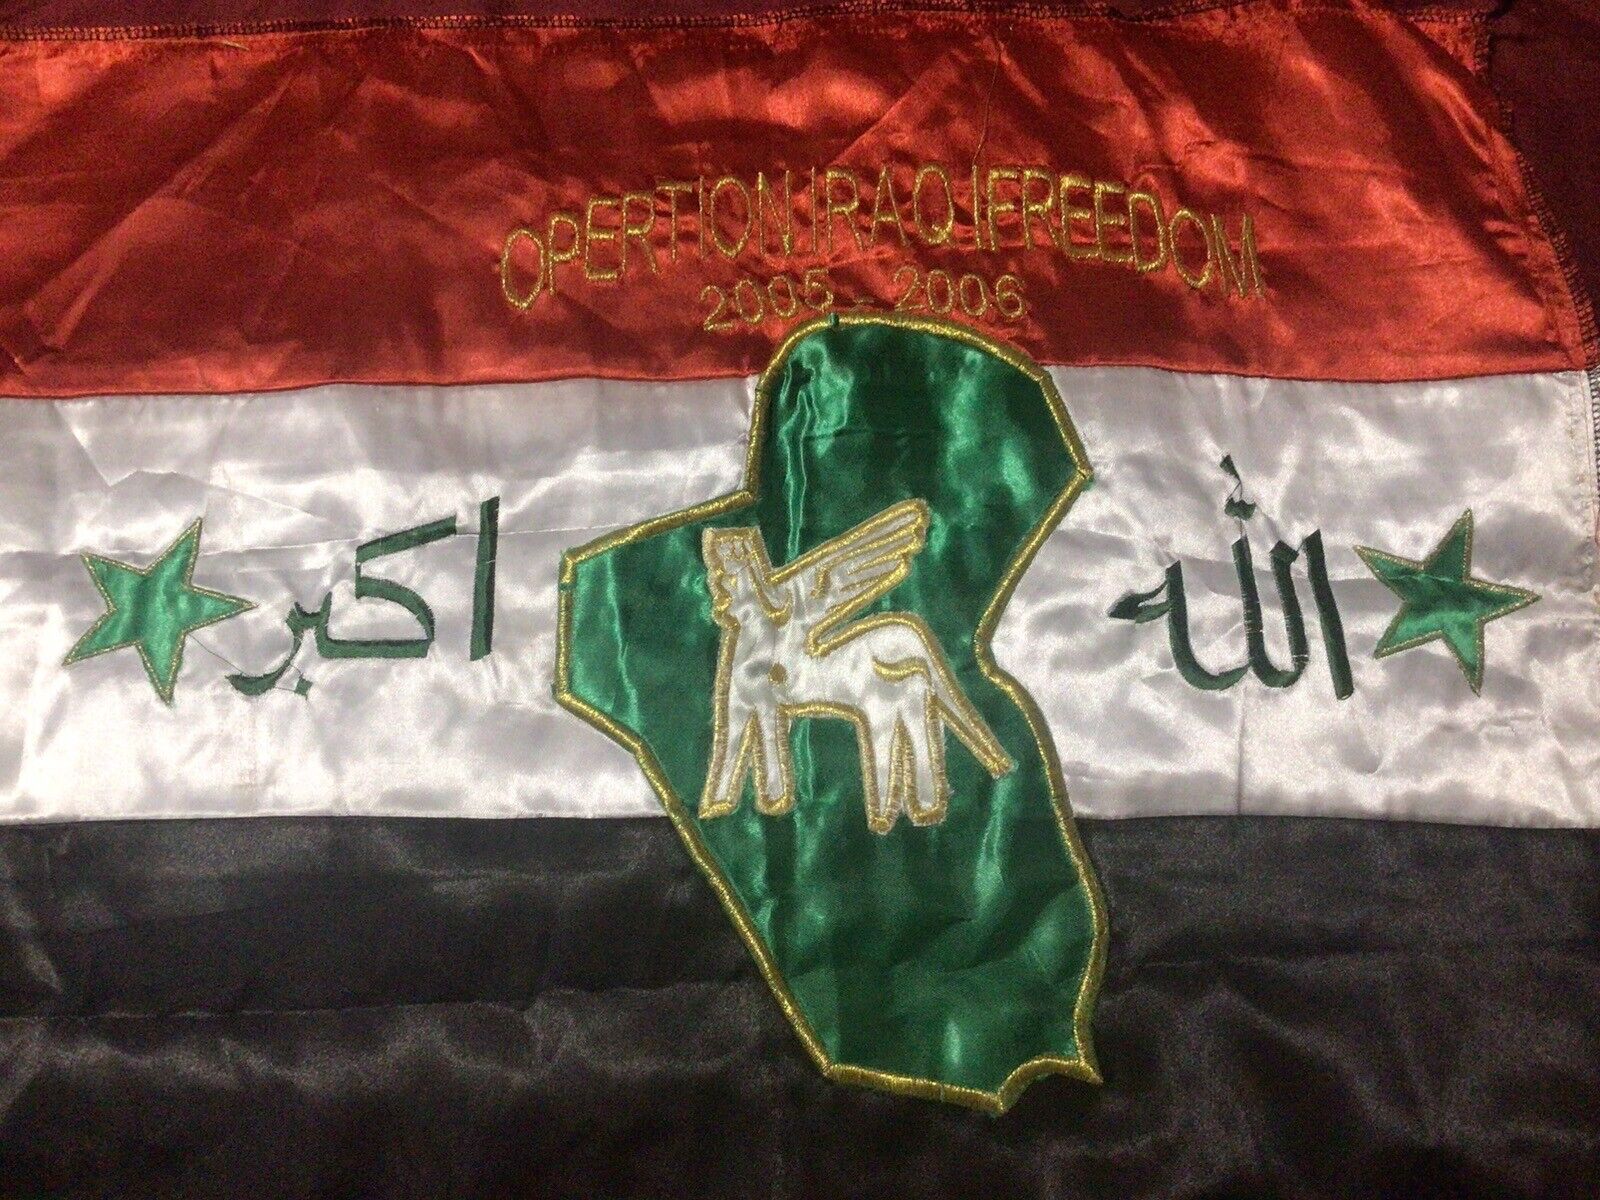 Iraq-Operation Iraqi Freedom Iraq Bringback-Iraqi Flag 2005-06, Theatre Made.